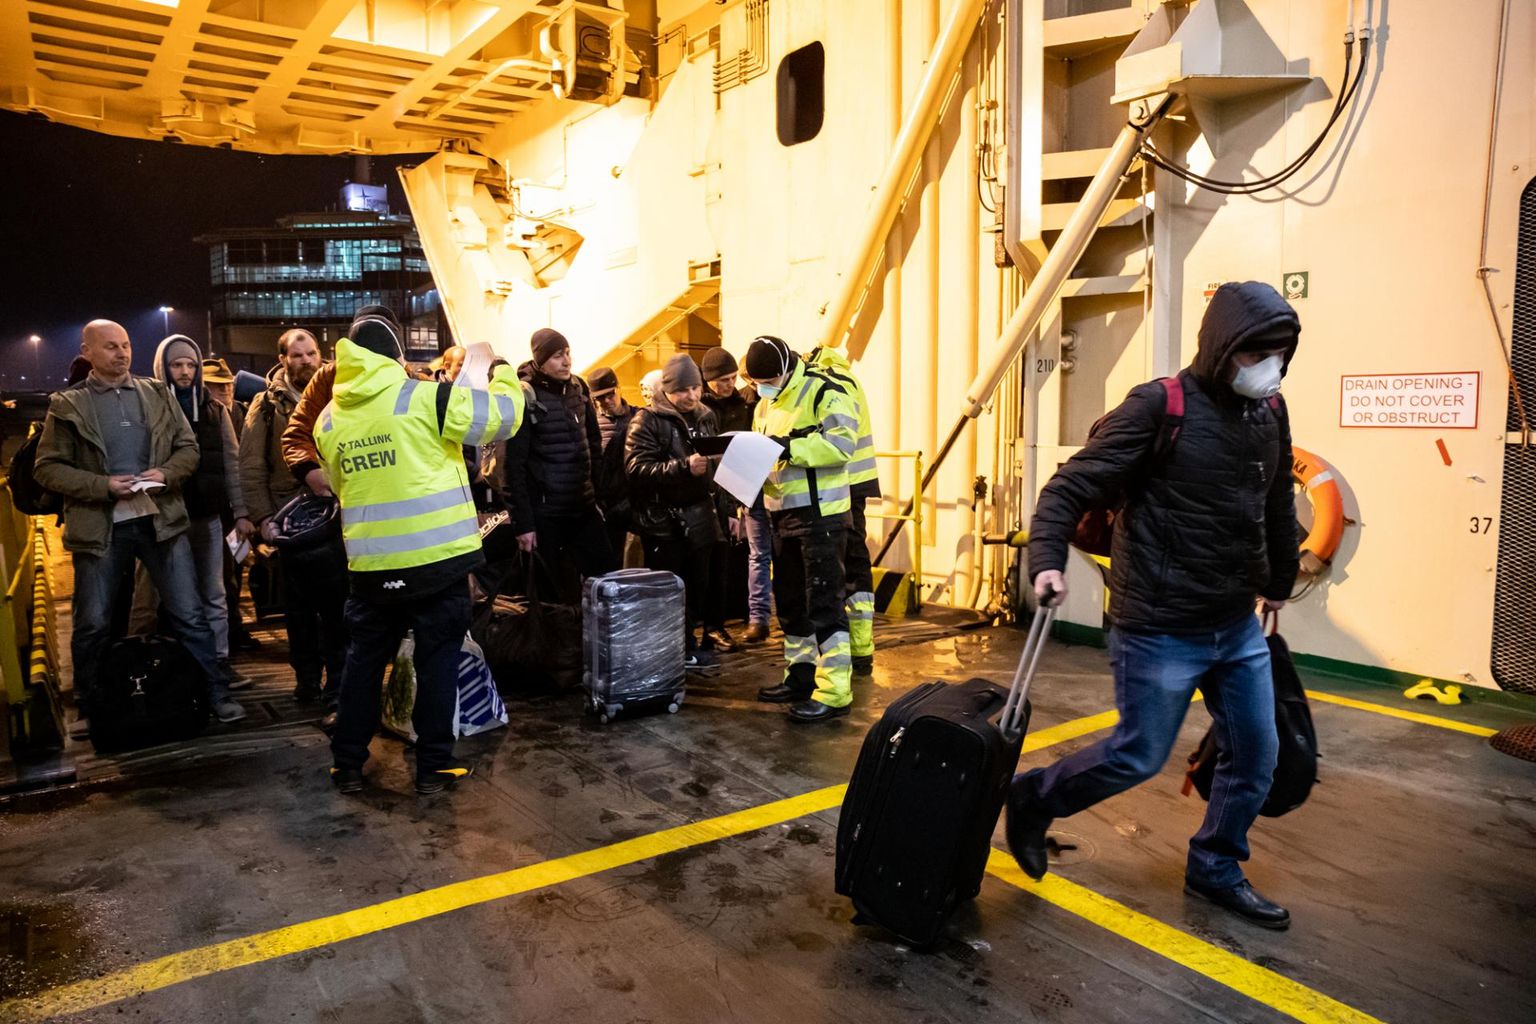 Koostöös valitsusega saatis Tallink erandkorras Saksamaale laeva Romantika, et tuua ära piiride sulgemise tõttu Euroopasse lõksu jäänud inimesed ja sõidukid. Pildil Saksamaal Sassnitzis Romantika pardale saabujad.